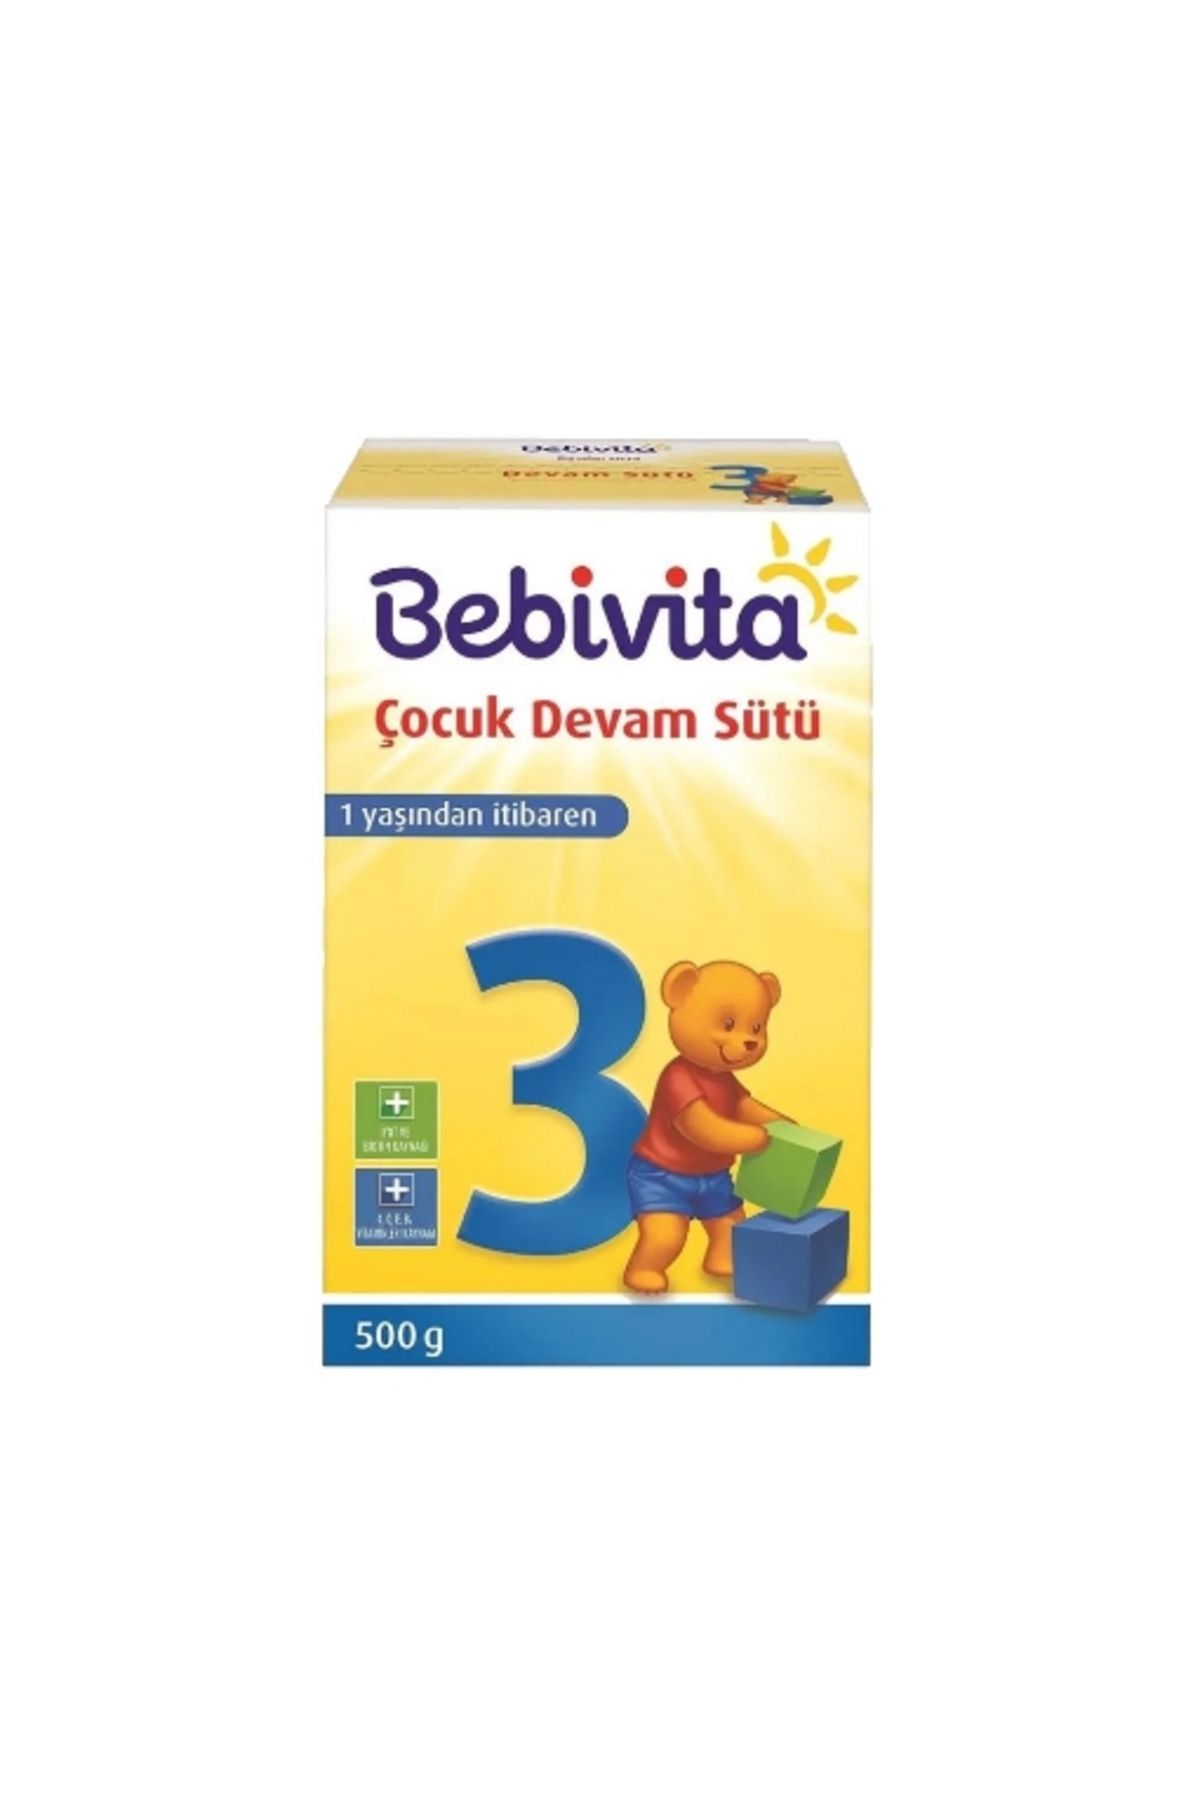 Bebivita Devam Sütü 3 500 Gr. (24'LÜ)